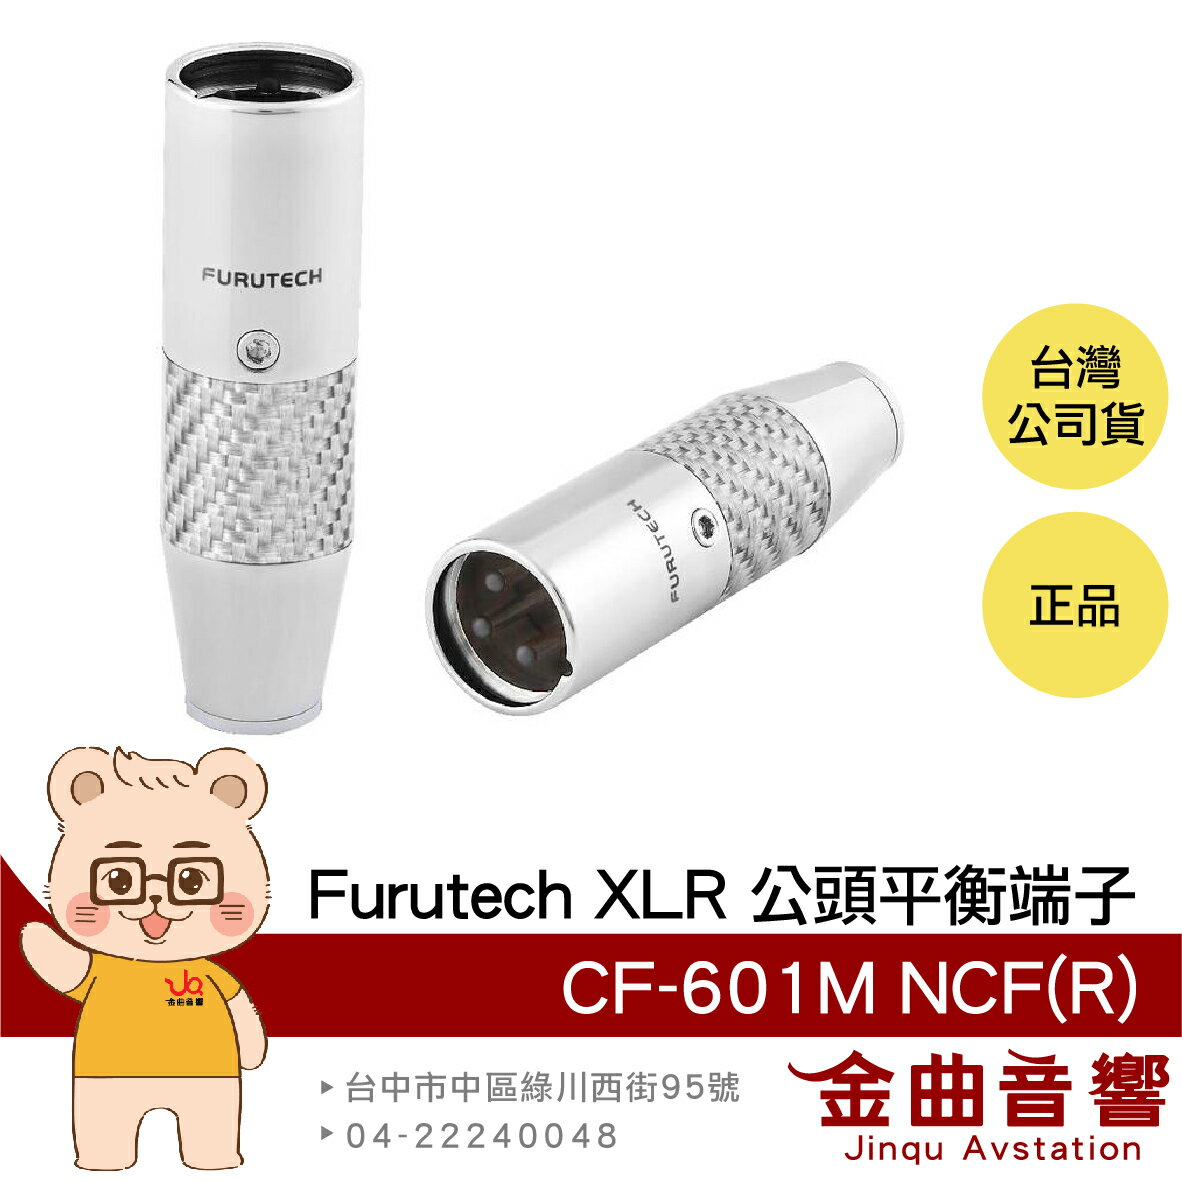 FURUTECH 古河 CF-601M NCF(R) XLR 公頭 平衡端子 | 金曲音響